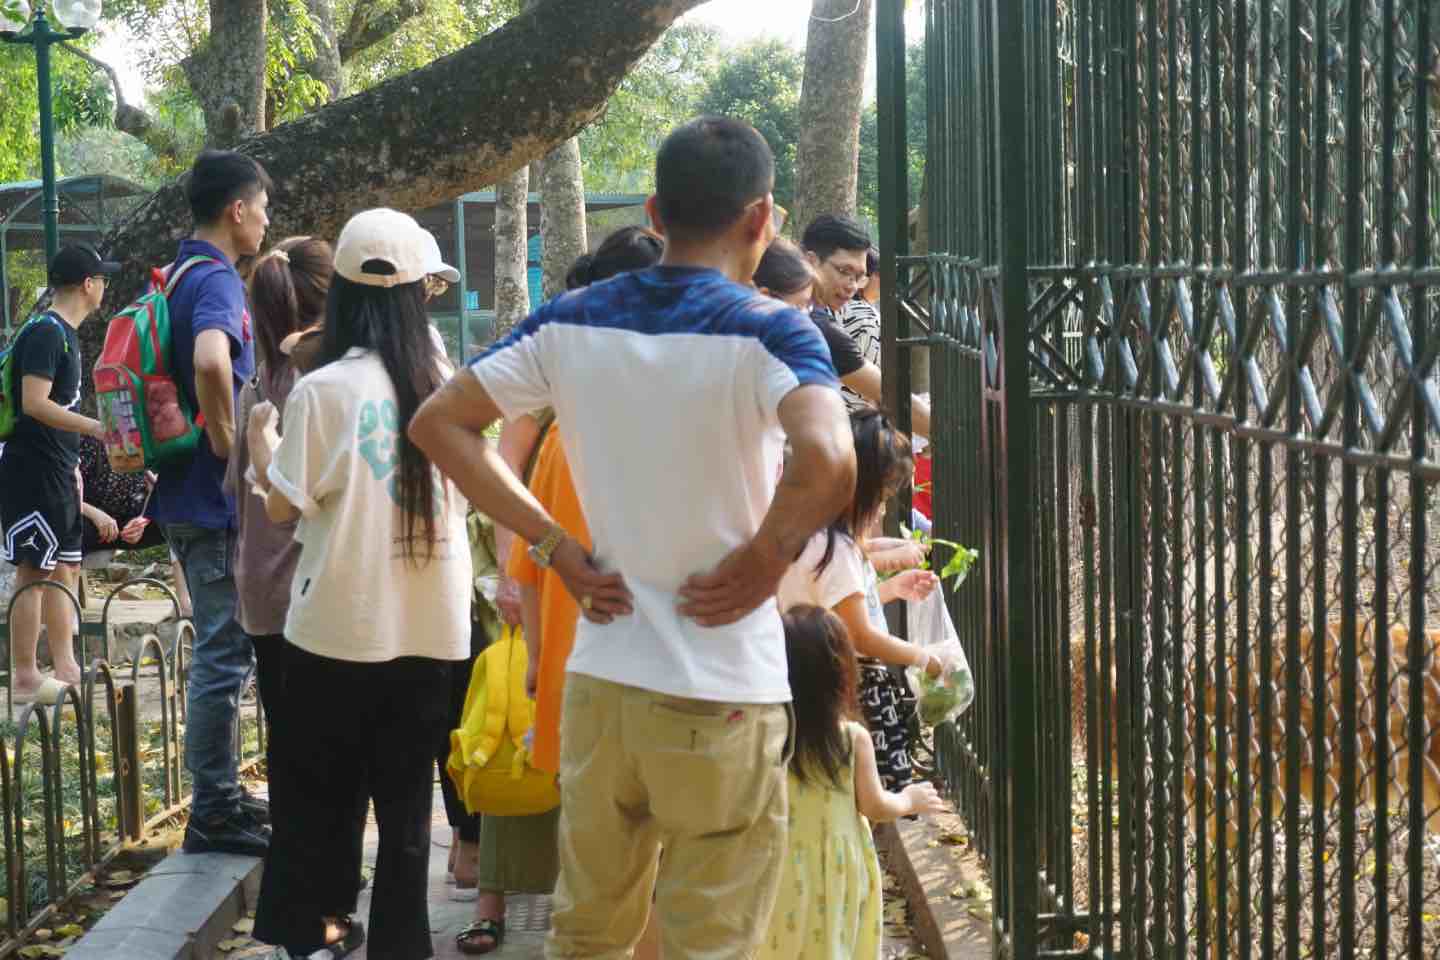 Khu vực các chuồng thú tại công viên Thủ Lệ thu hút được nhiều trẻ em, người lớn. Ảnh: Nhật Minh